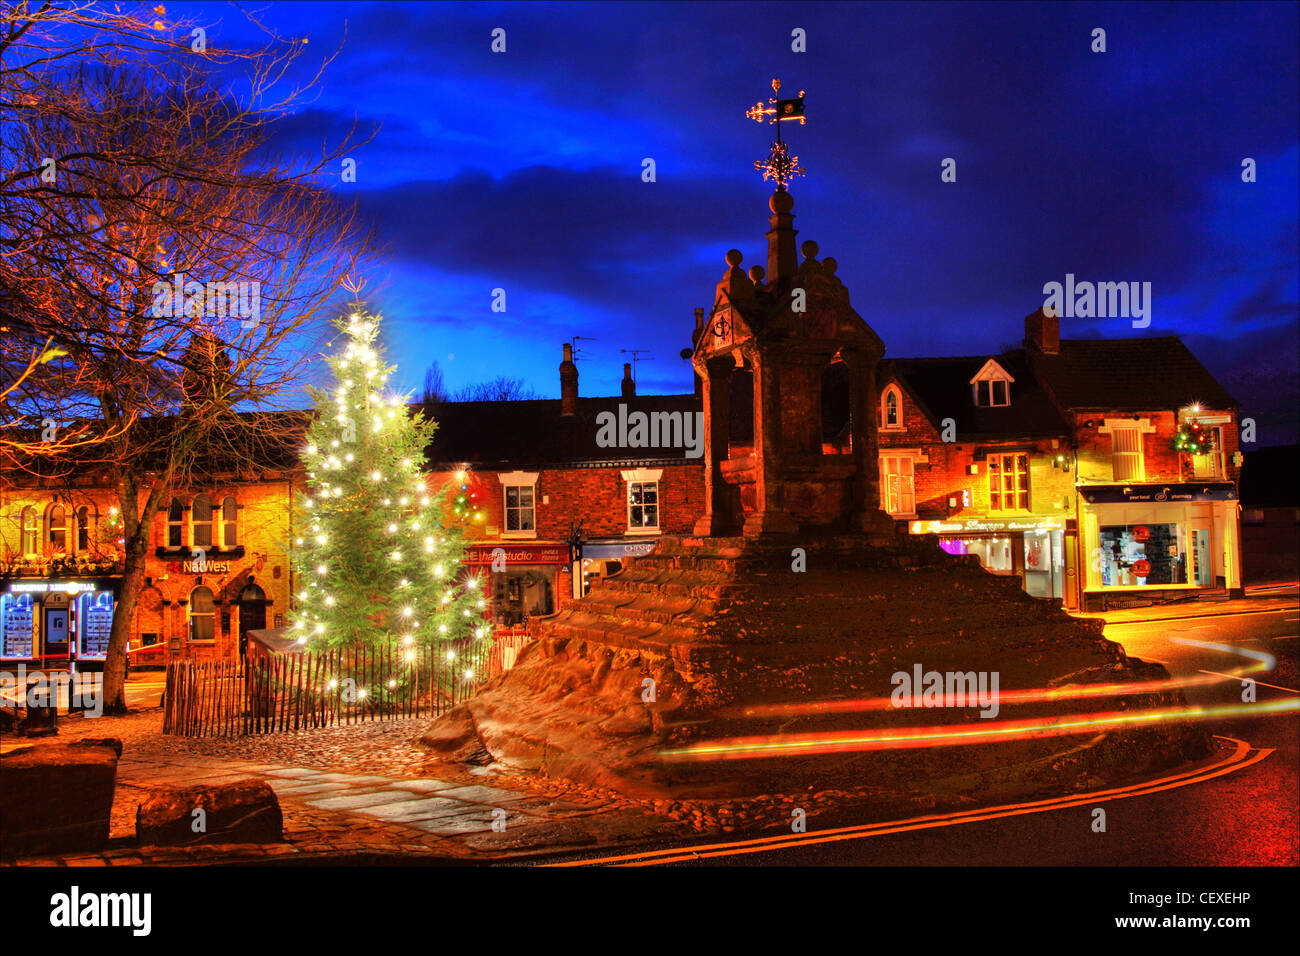 Scène de Noël à l'arbre de Noël à Lymm Lymm Cross, village, Cheshire, England, UK Banque D'Images